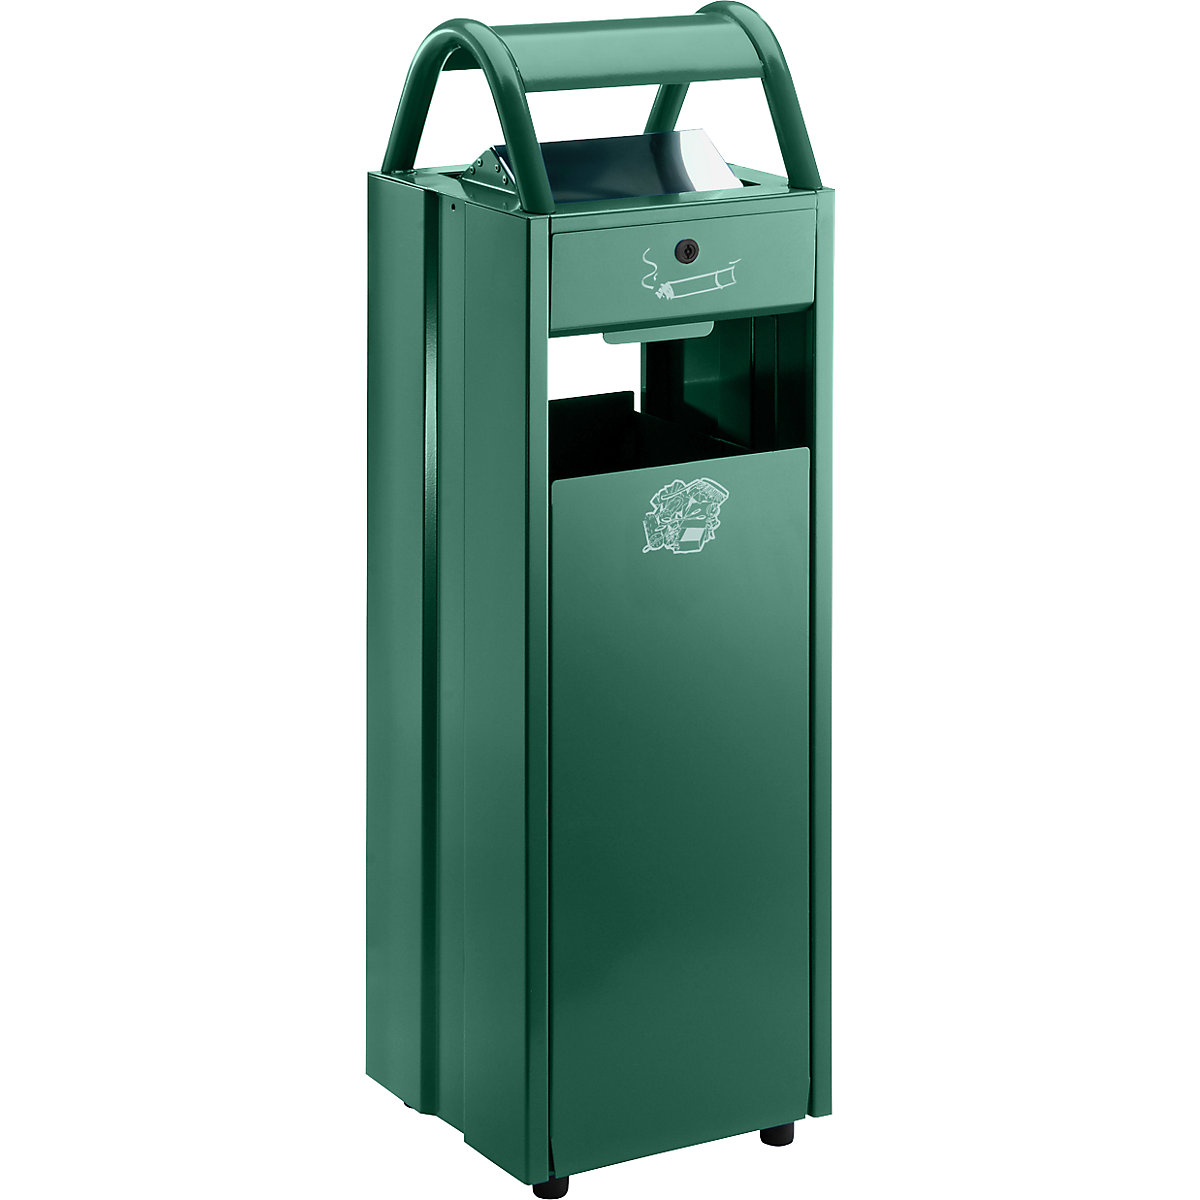 VAR – Sběrač odpadů s popelníkem a ochrannou stříškou proti dešti, objem 35 l, š x v x h 300 x 960 x 250 mm, zelená RAL 6005